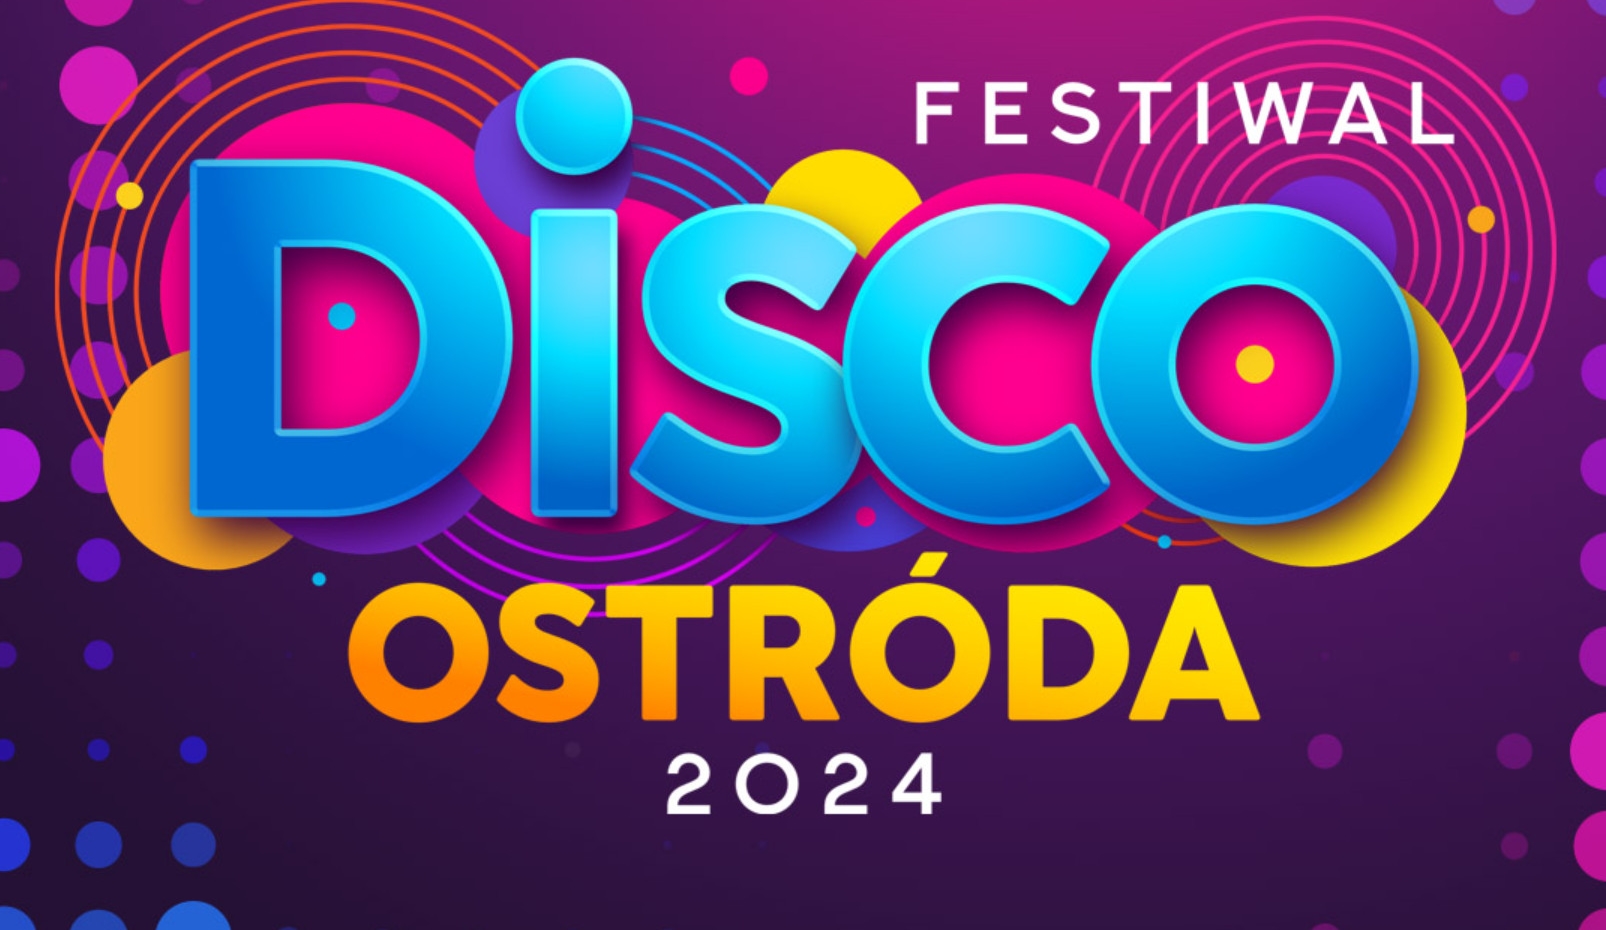 Festiwal Disco Ostróda 2024! Wielka impreza disco polo już 19 i 20 lipca! Kto wystąpi? Bilety